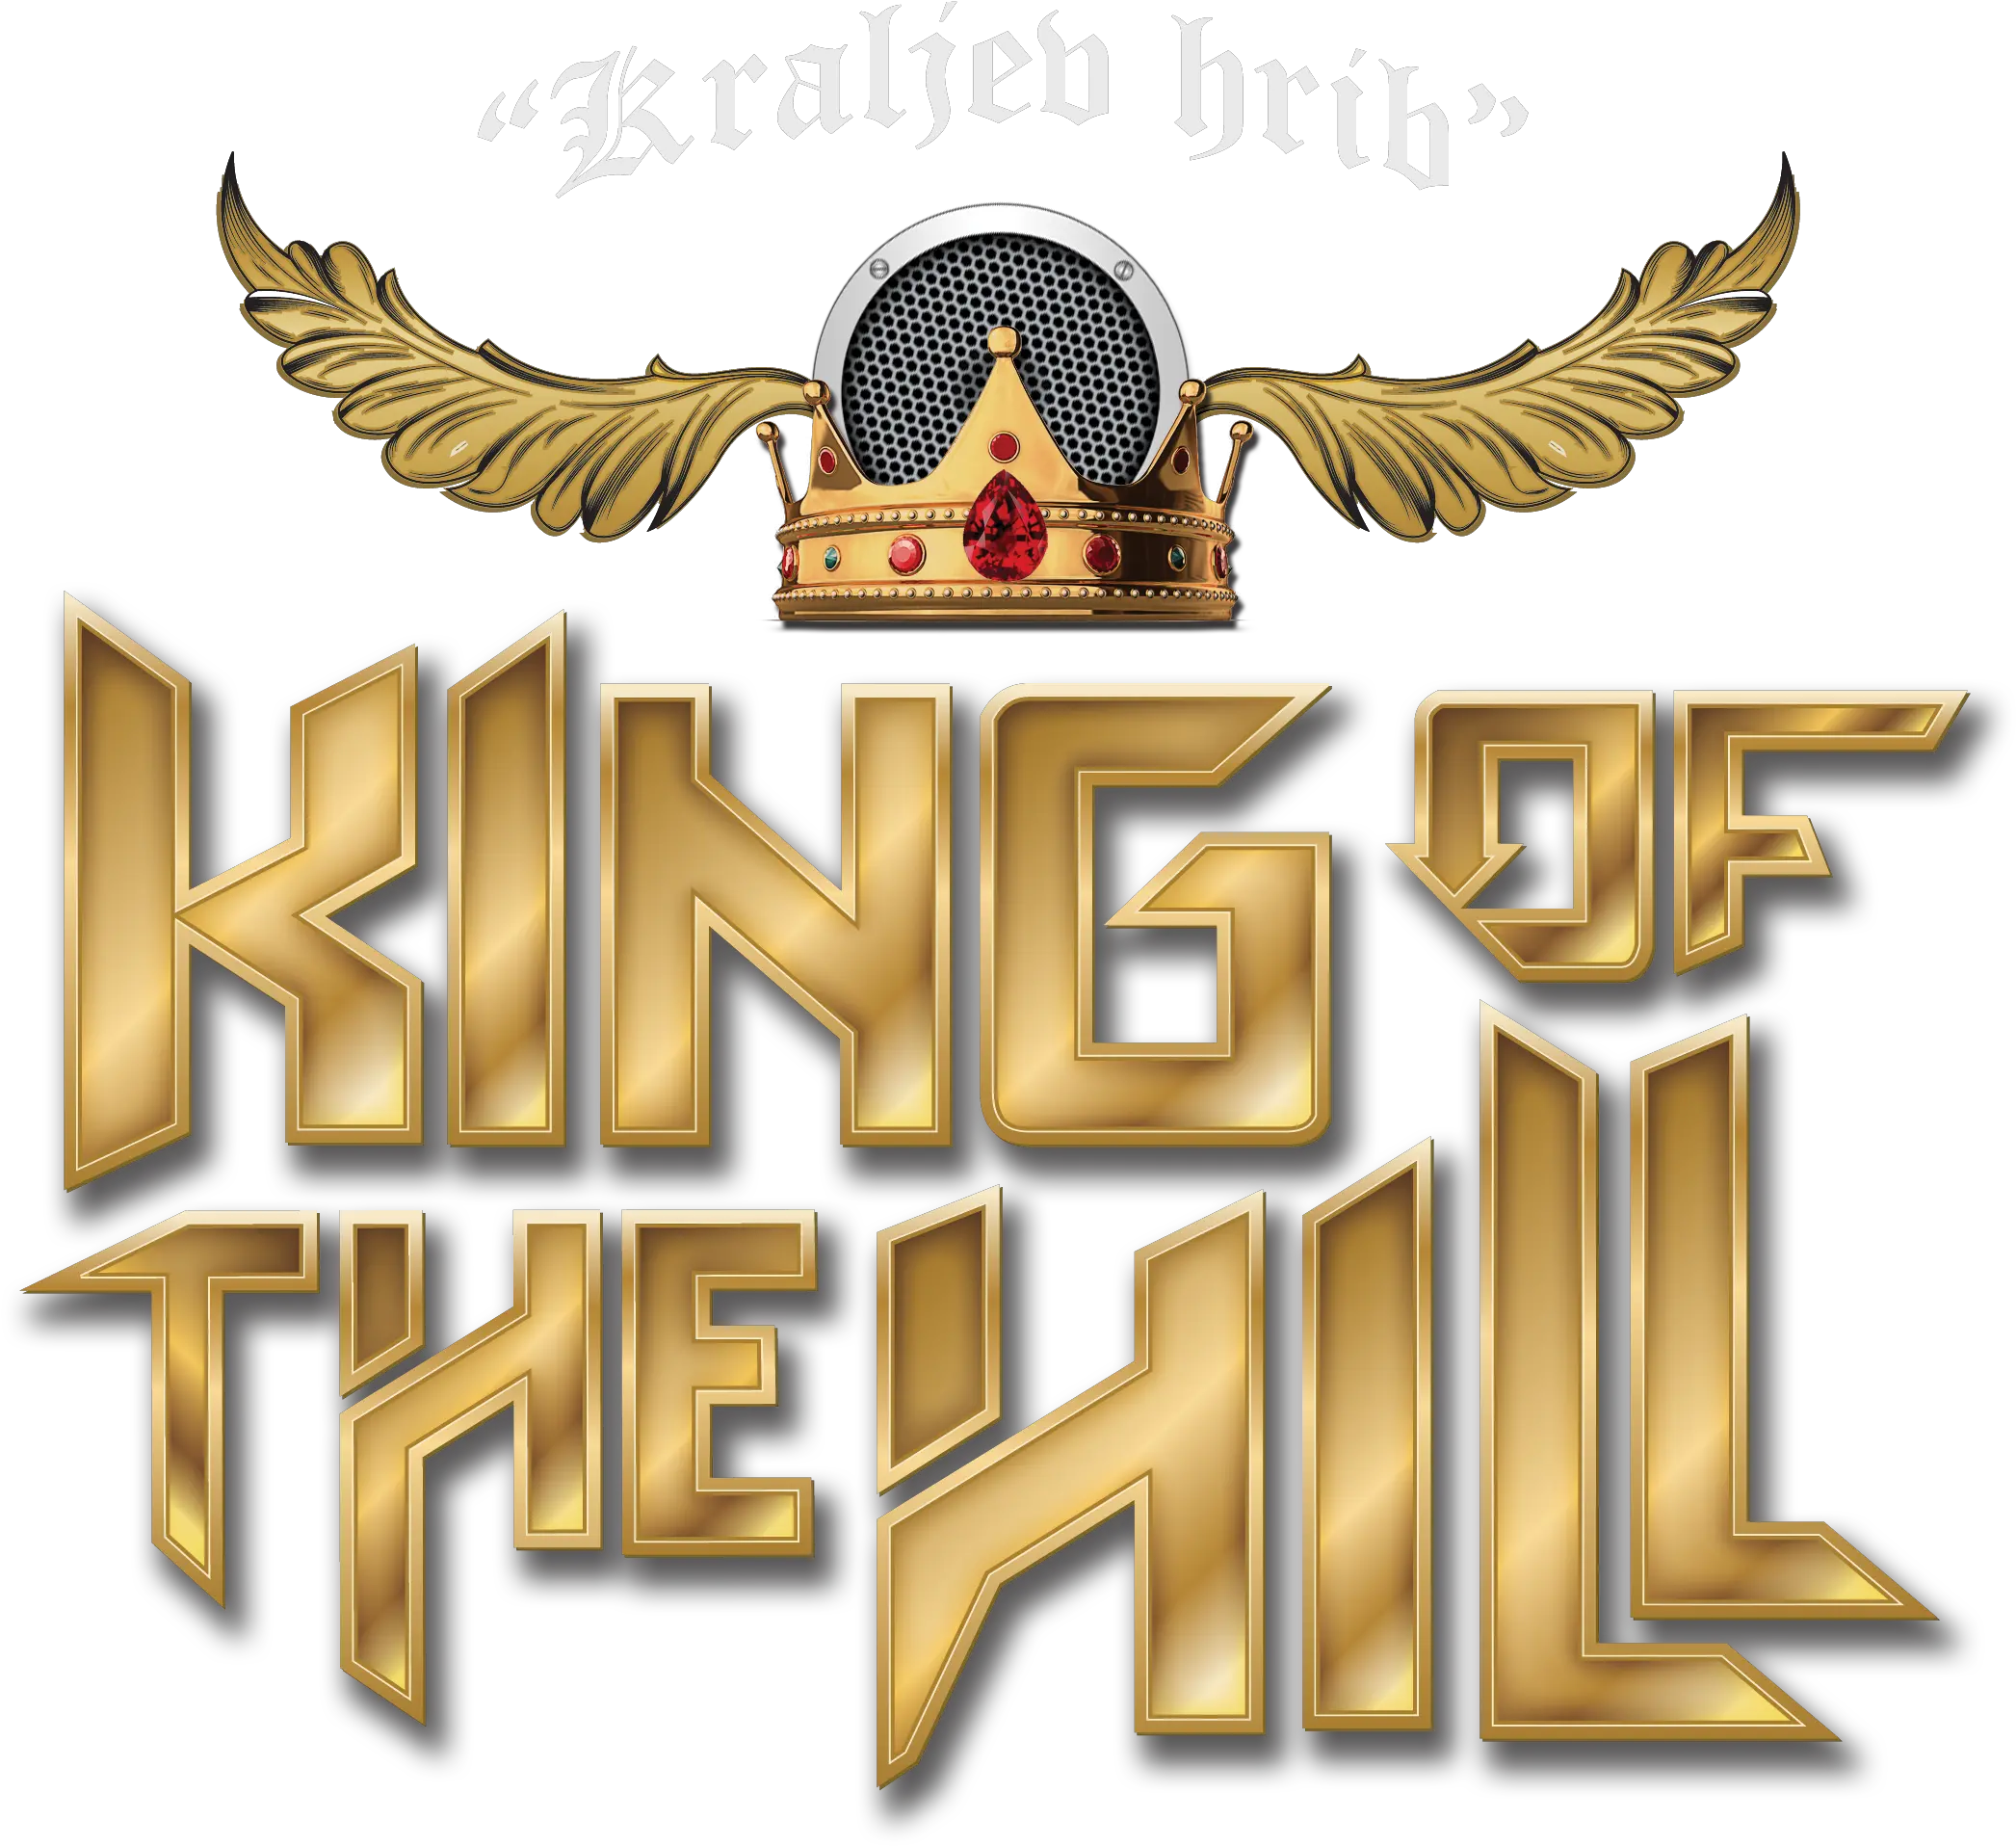 Hill Djs La Familia Will Entertain You Png Picsart King Logo Hd Hank Hill Png